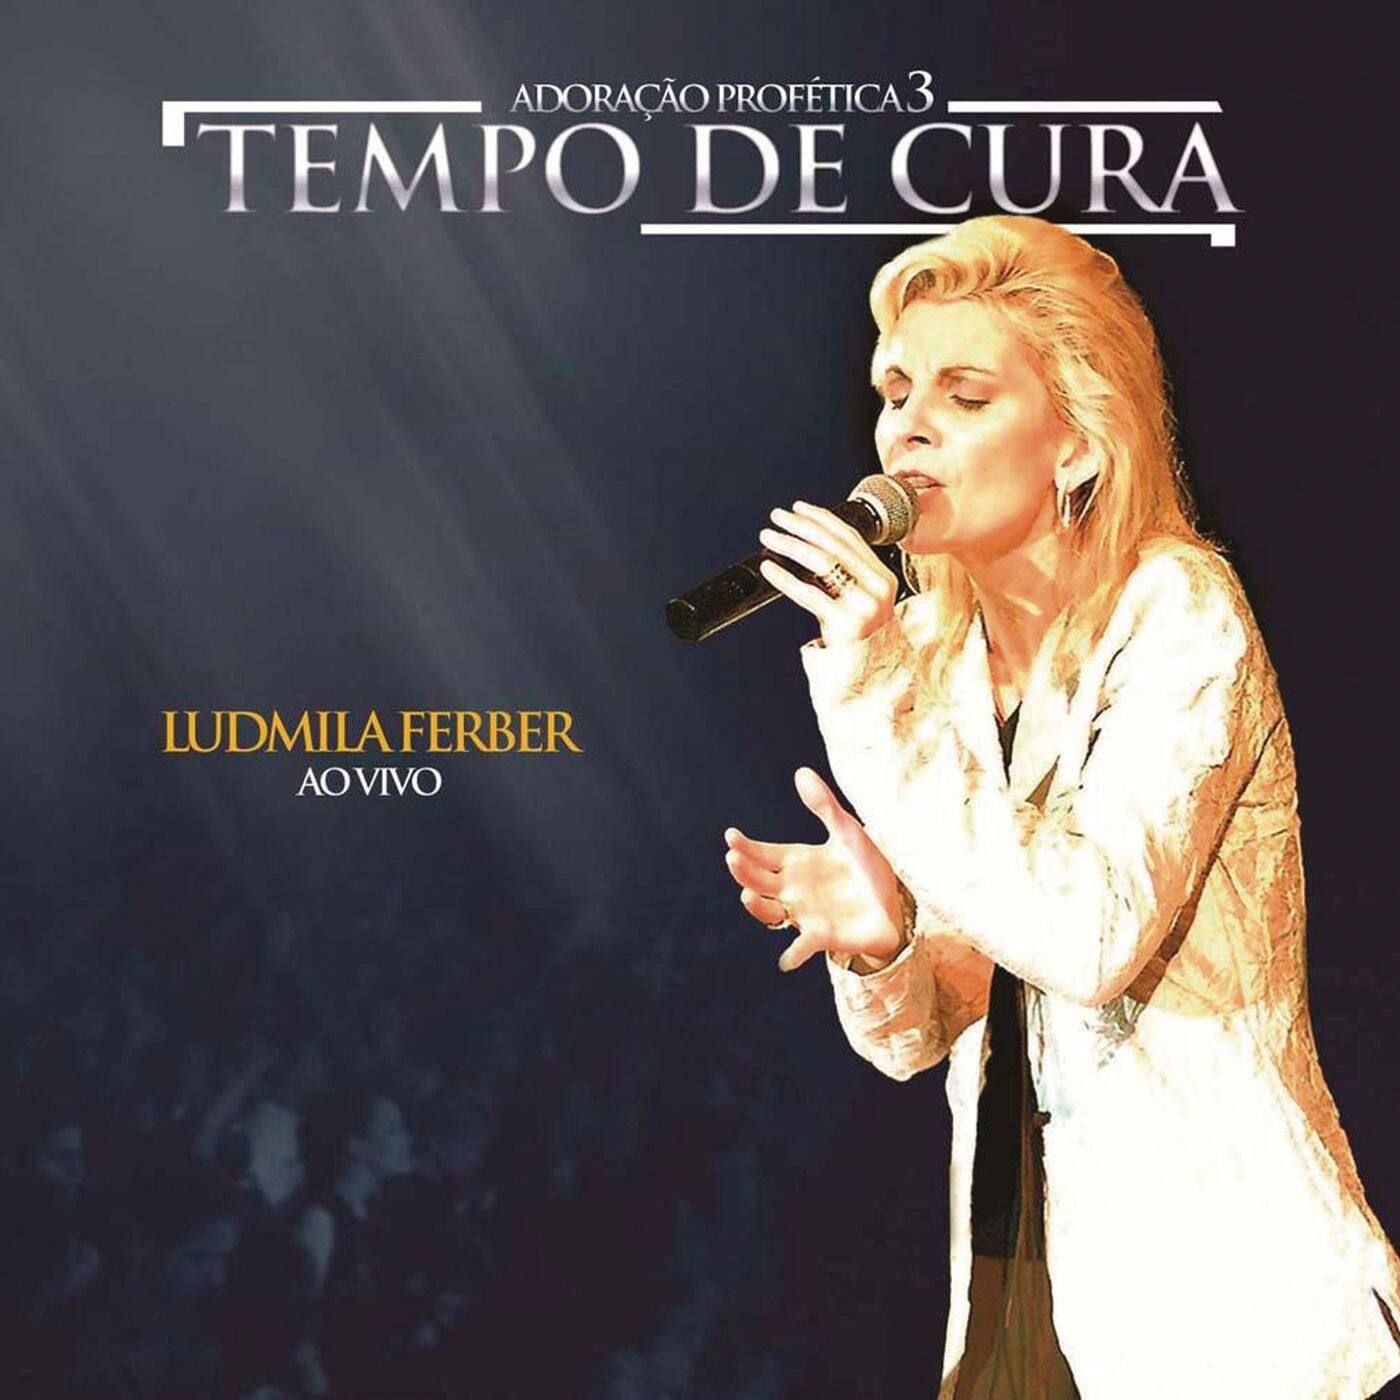 Ludmila Ferber - Sonhos de Deus - Cifra Club PDF, PDF